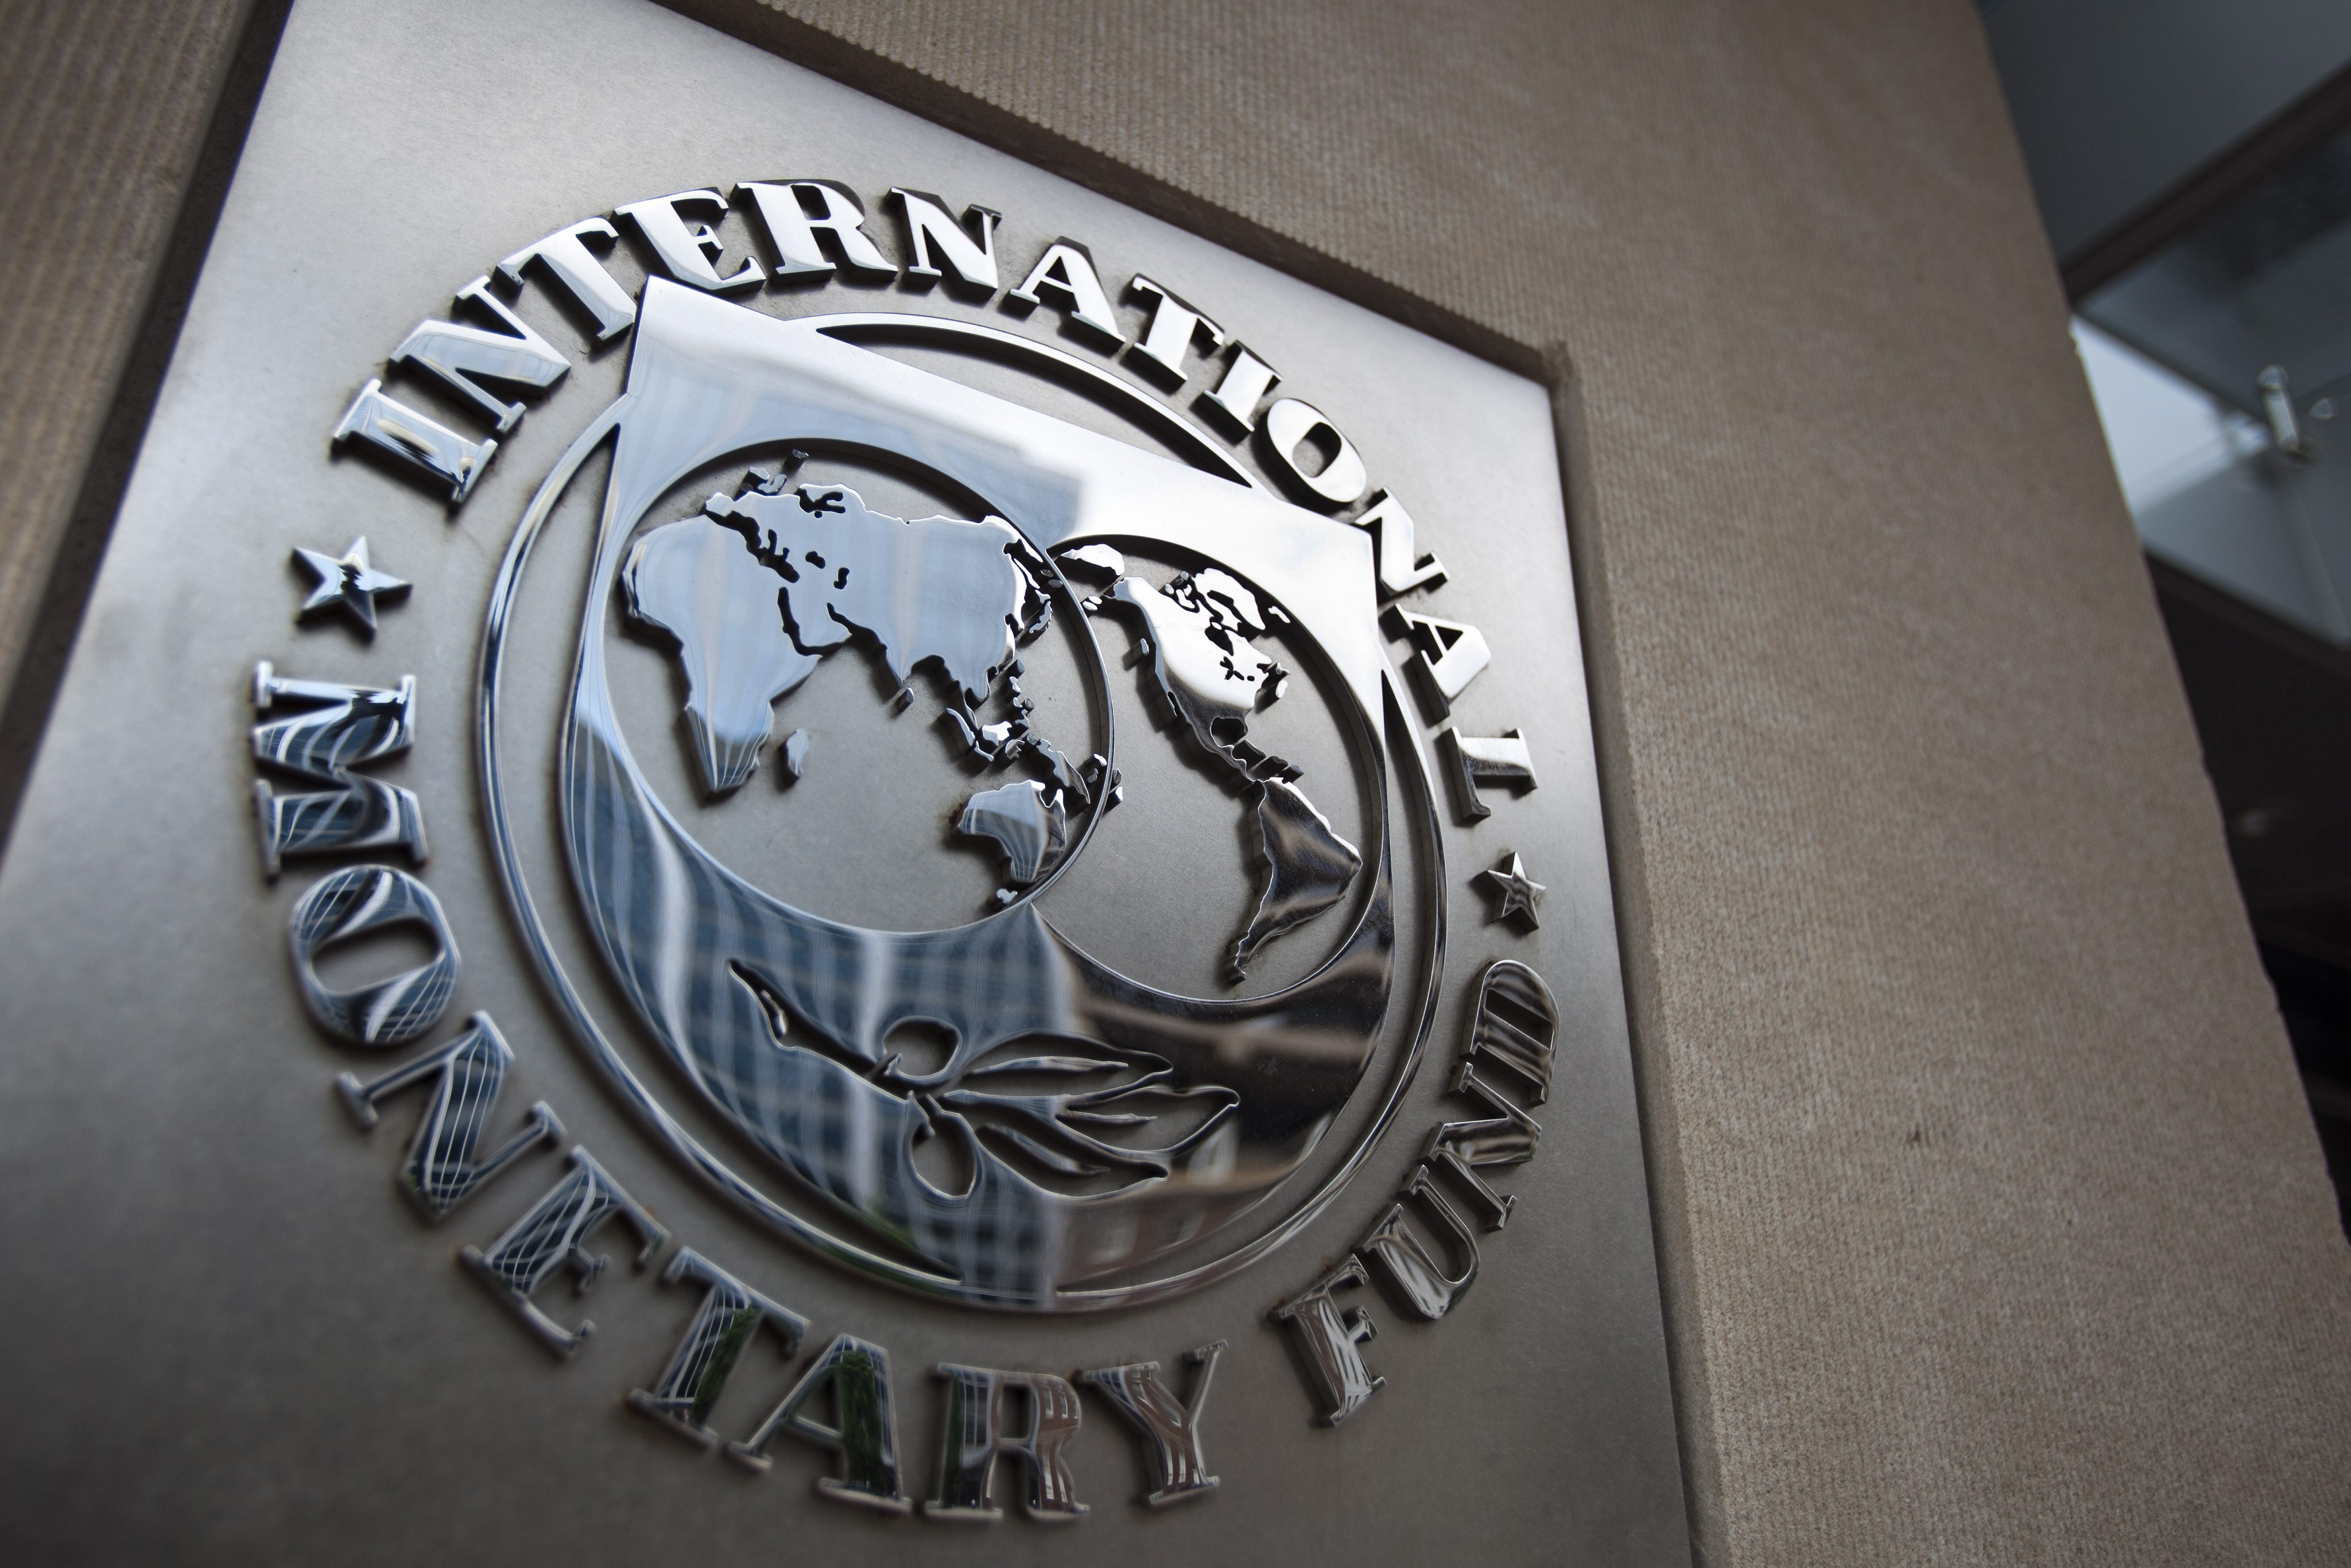 Meta do défice é possível em 2018 mas anos seguintes são mais ambiciosos, diz FMI